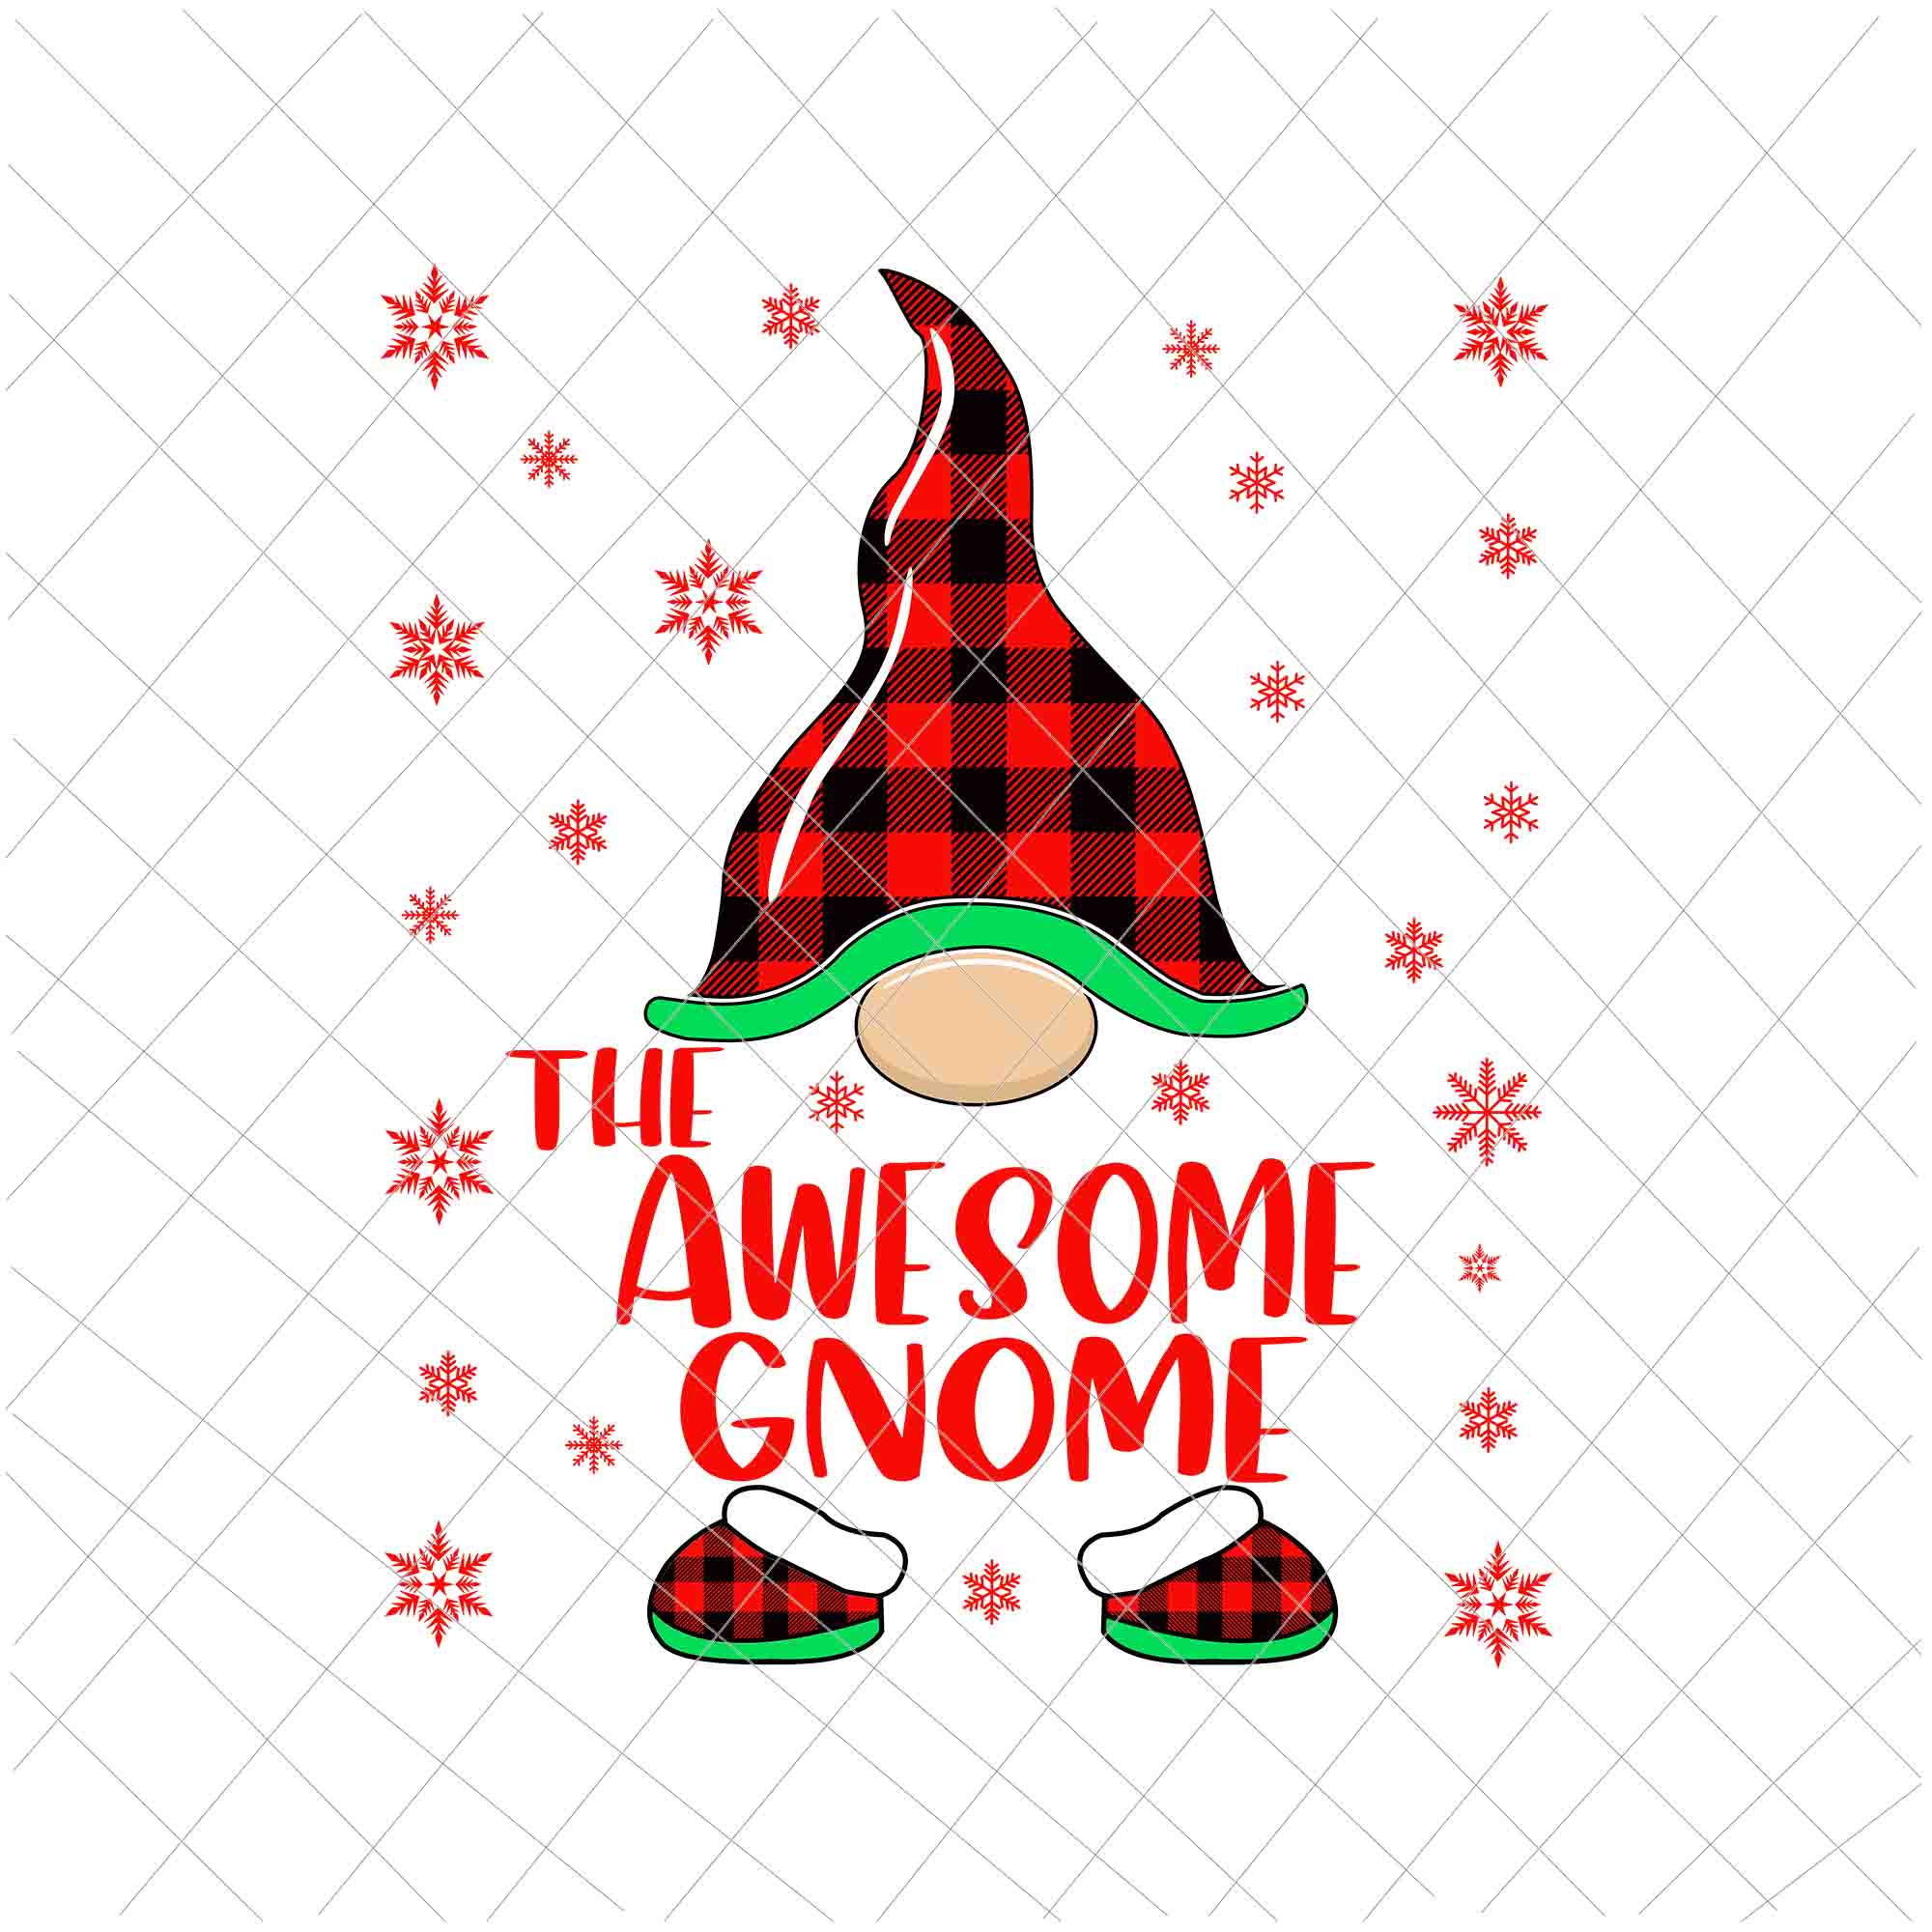 The Awesome Gnome Svg, Gnome Buffalo Plaid Christmas Svg, Christmas Gnomies Svg, Christmas Gnome Svg